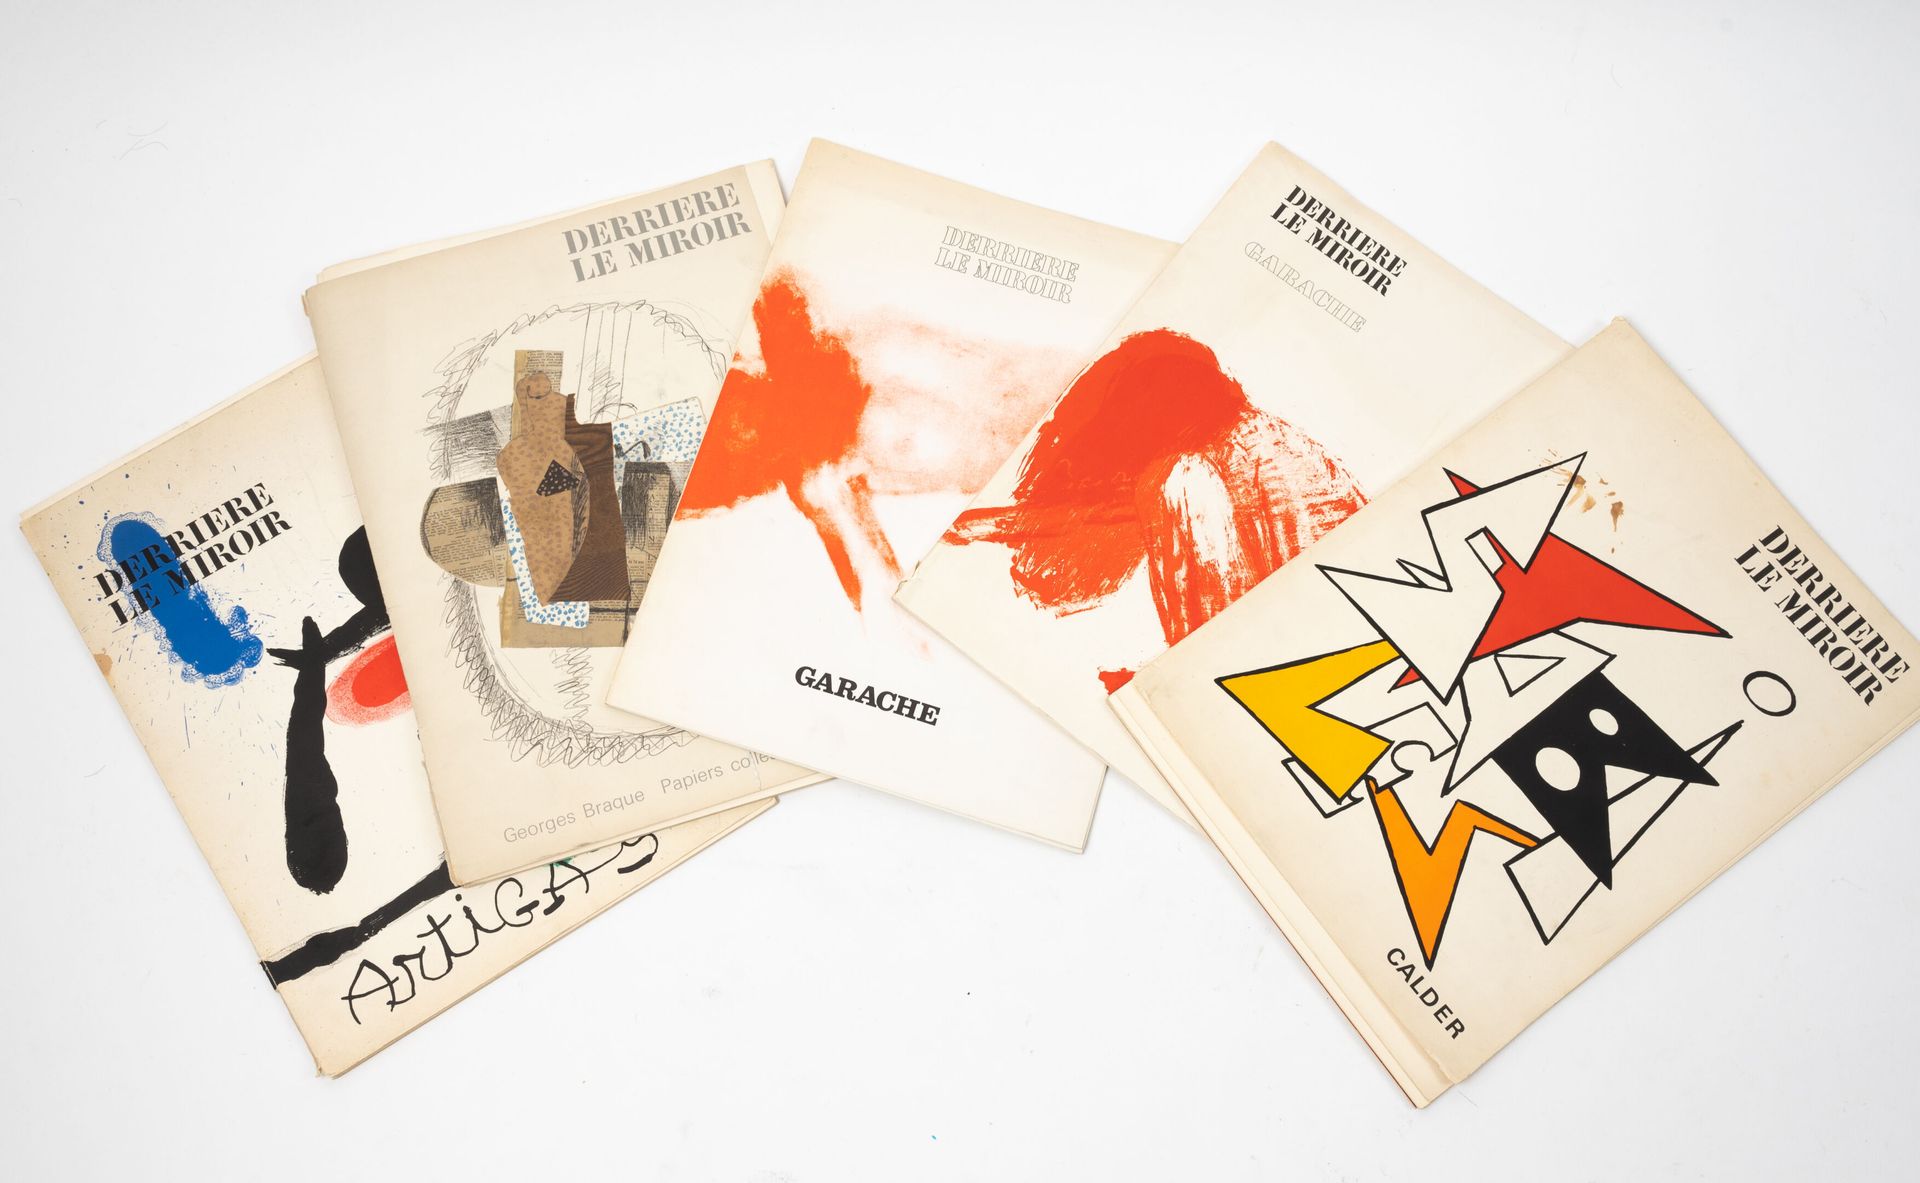 DERRIERE LE MIROIR Lote de 5 volúmenes:
-N°138, Braque, mayo de 1963.
-N°139-140&hellip;